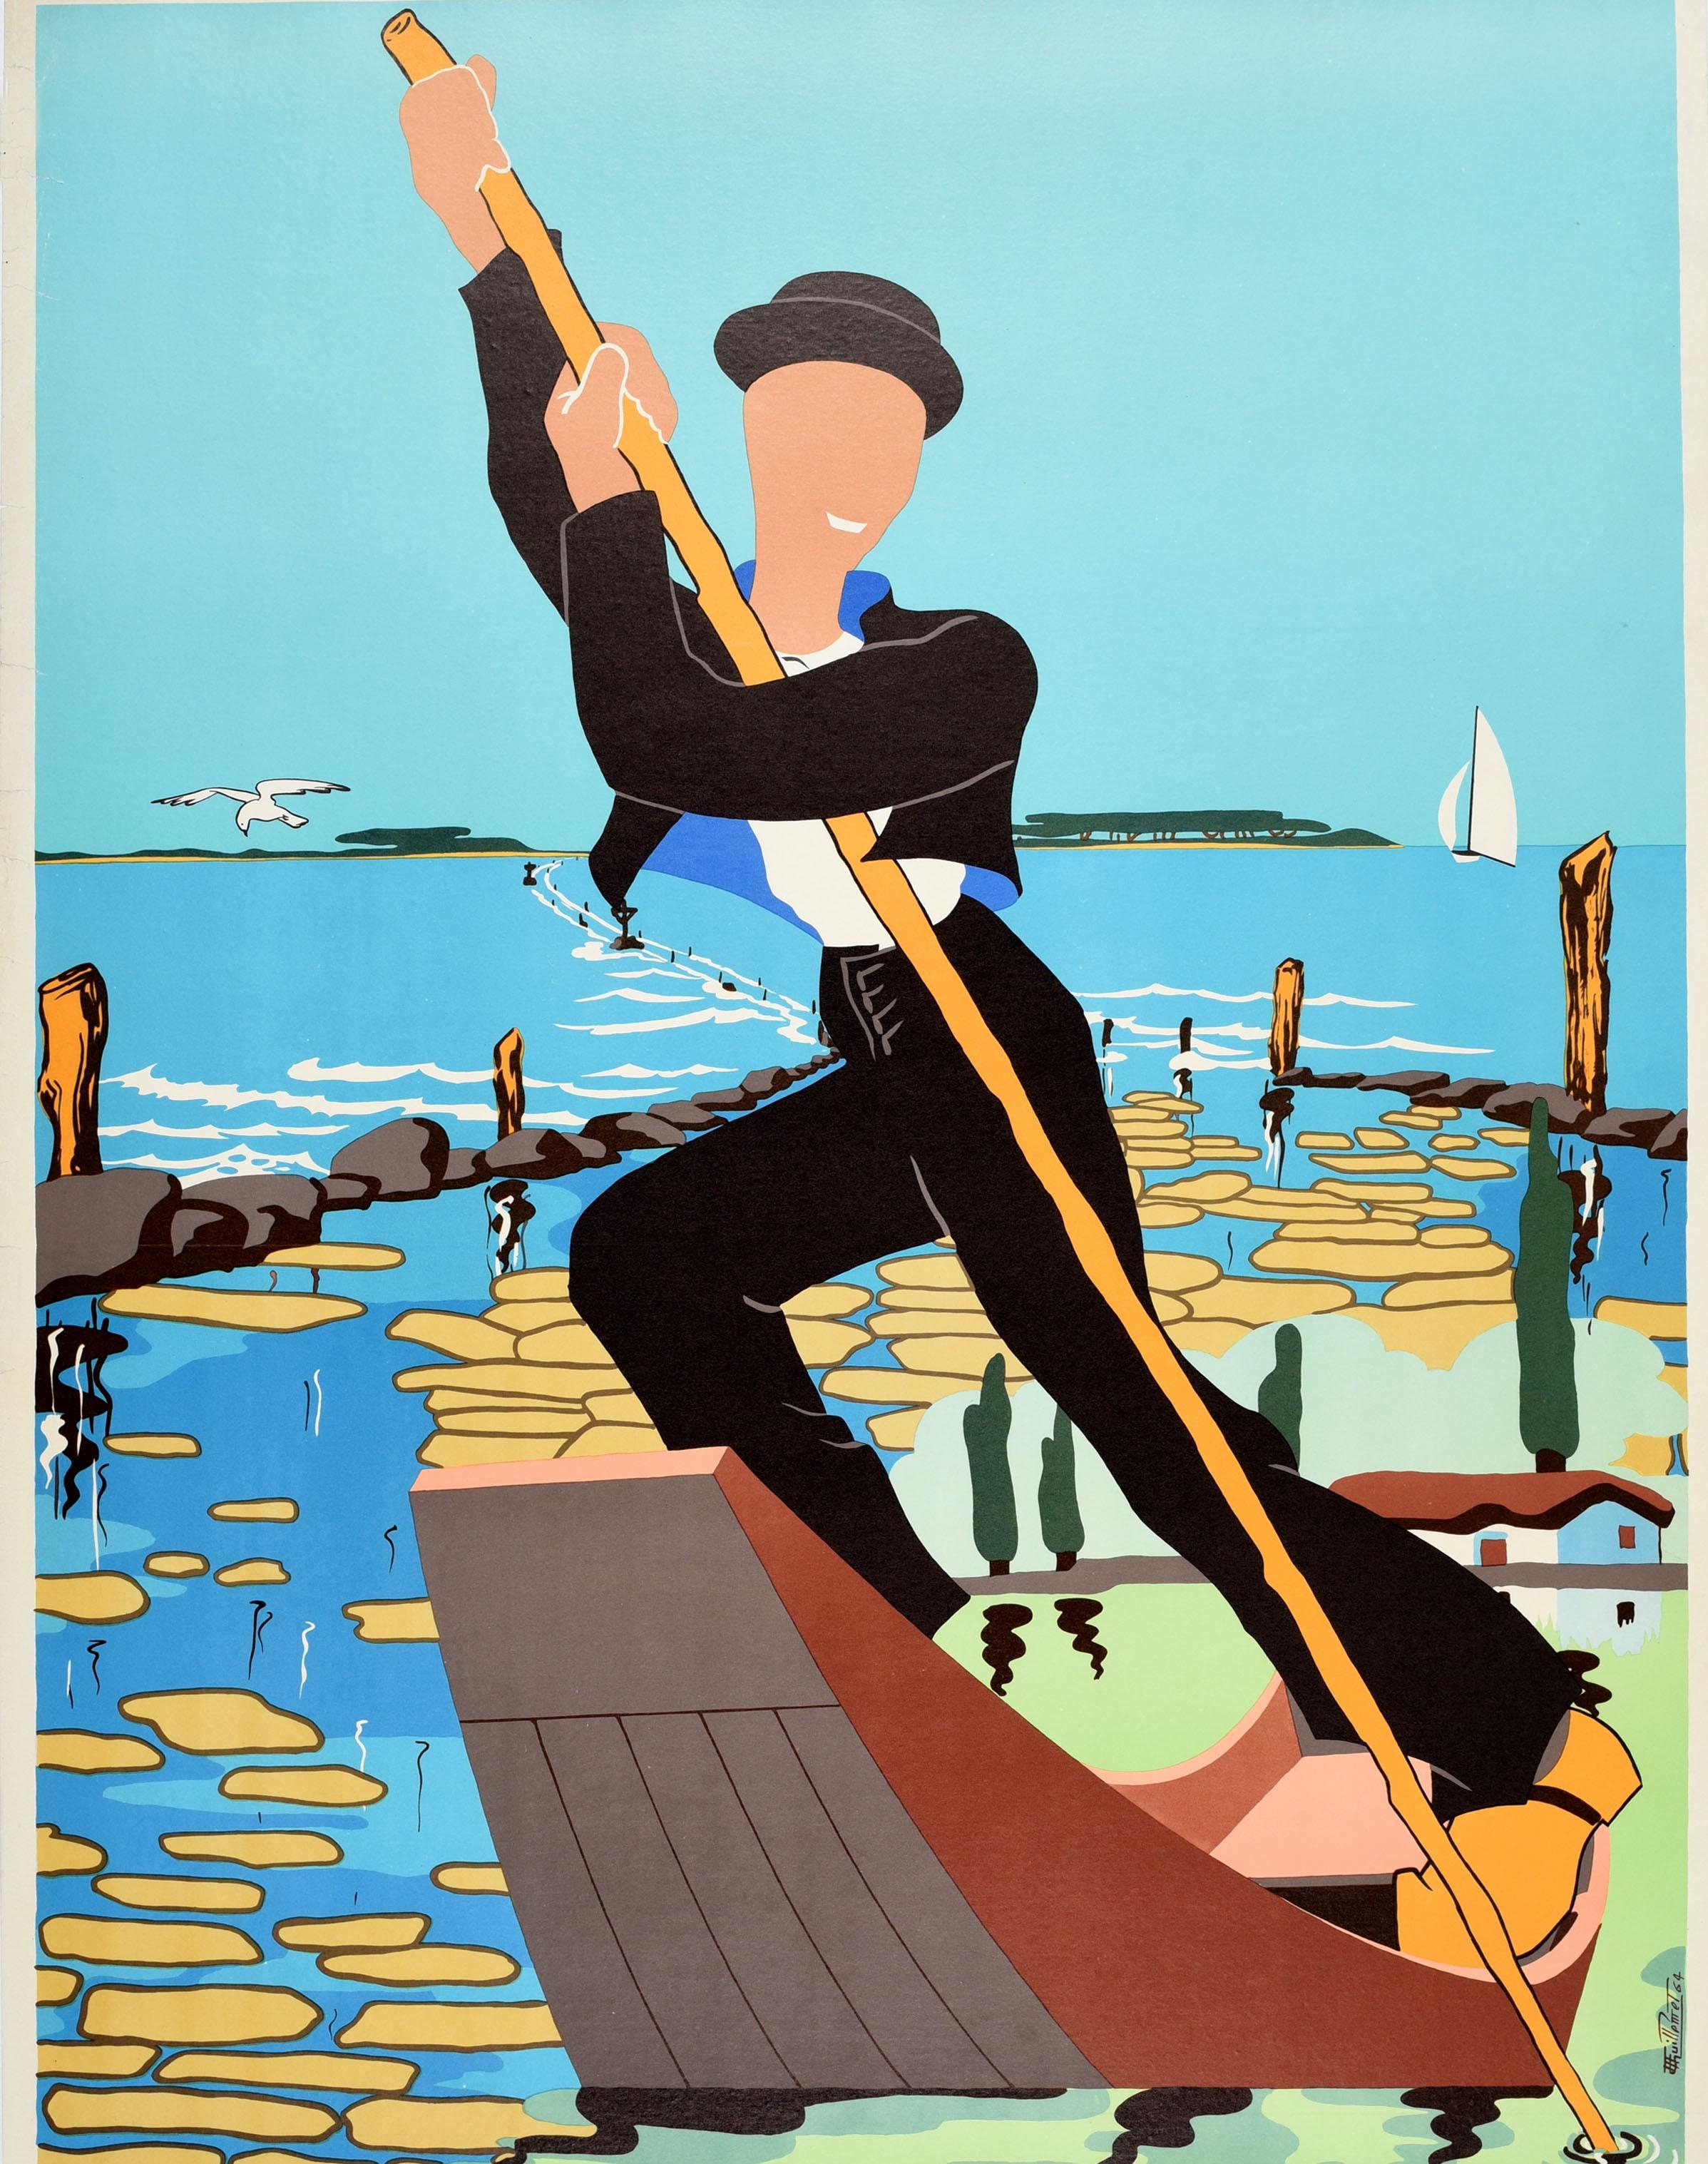 Original-Reiseplakat für die Vendee in Frankreich mit einer farbenfrohen Illustration eines lächelnden Mannes auf einem Gondelboot, über dem eine Möwe fliegt, hohen Bäumen neben einem Haus auf dem Land und einem Segelboot in der Ferne. Die Vendee